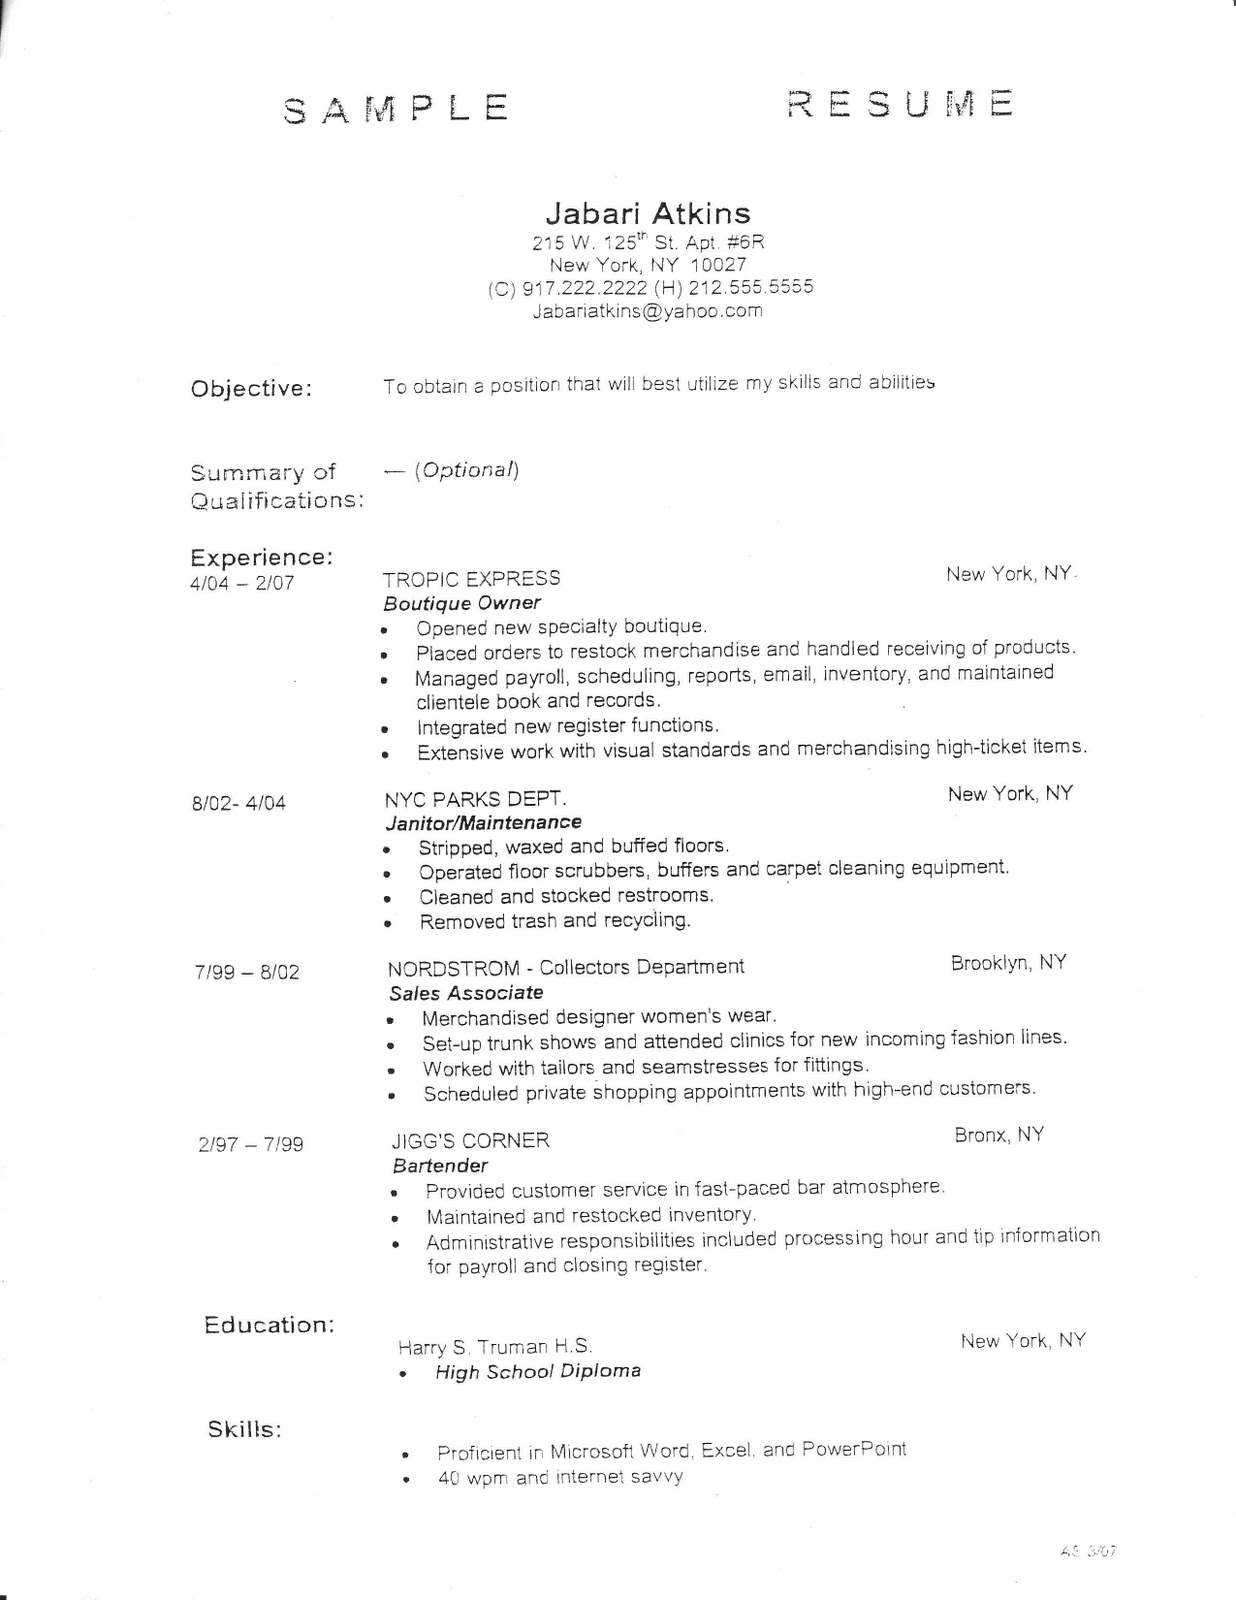 Basic outline for a resume